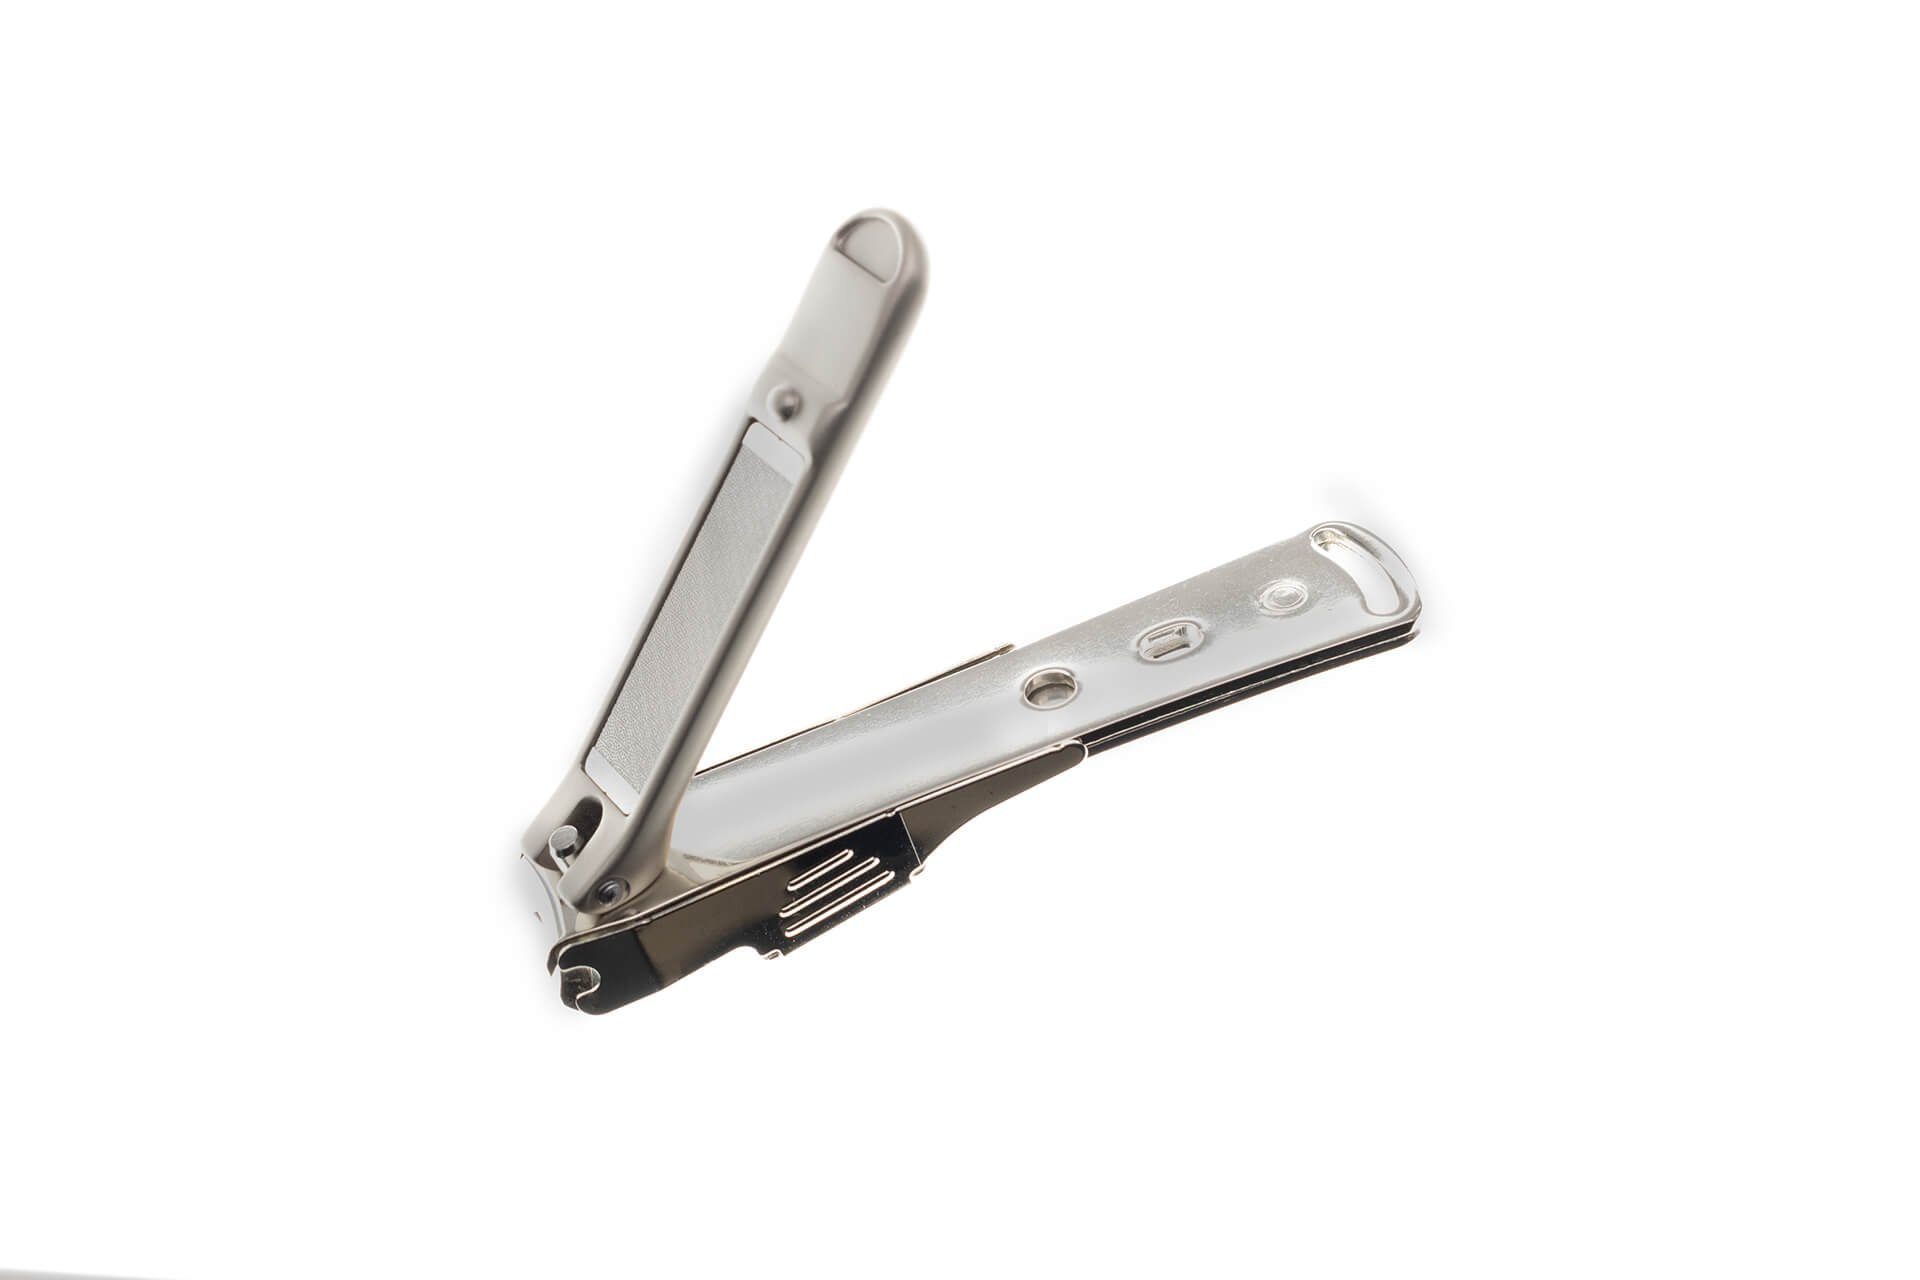 Seki EDGE Nagelknipser 2x8x1 G-1115 Auffangvorrichtung mit Kleiner Nagelknipser cm, Qualitätsprodukt Japan aus handgeschärftes